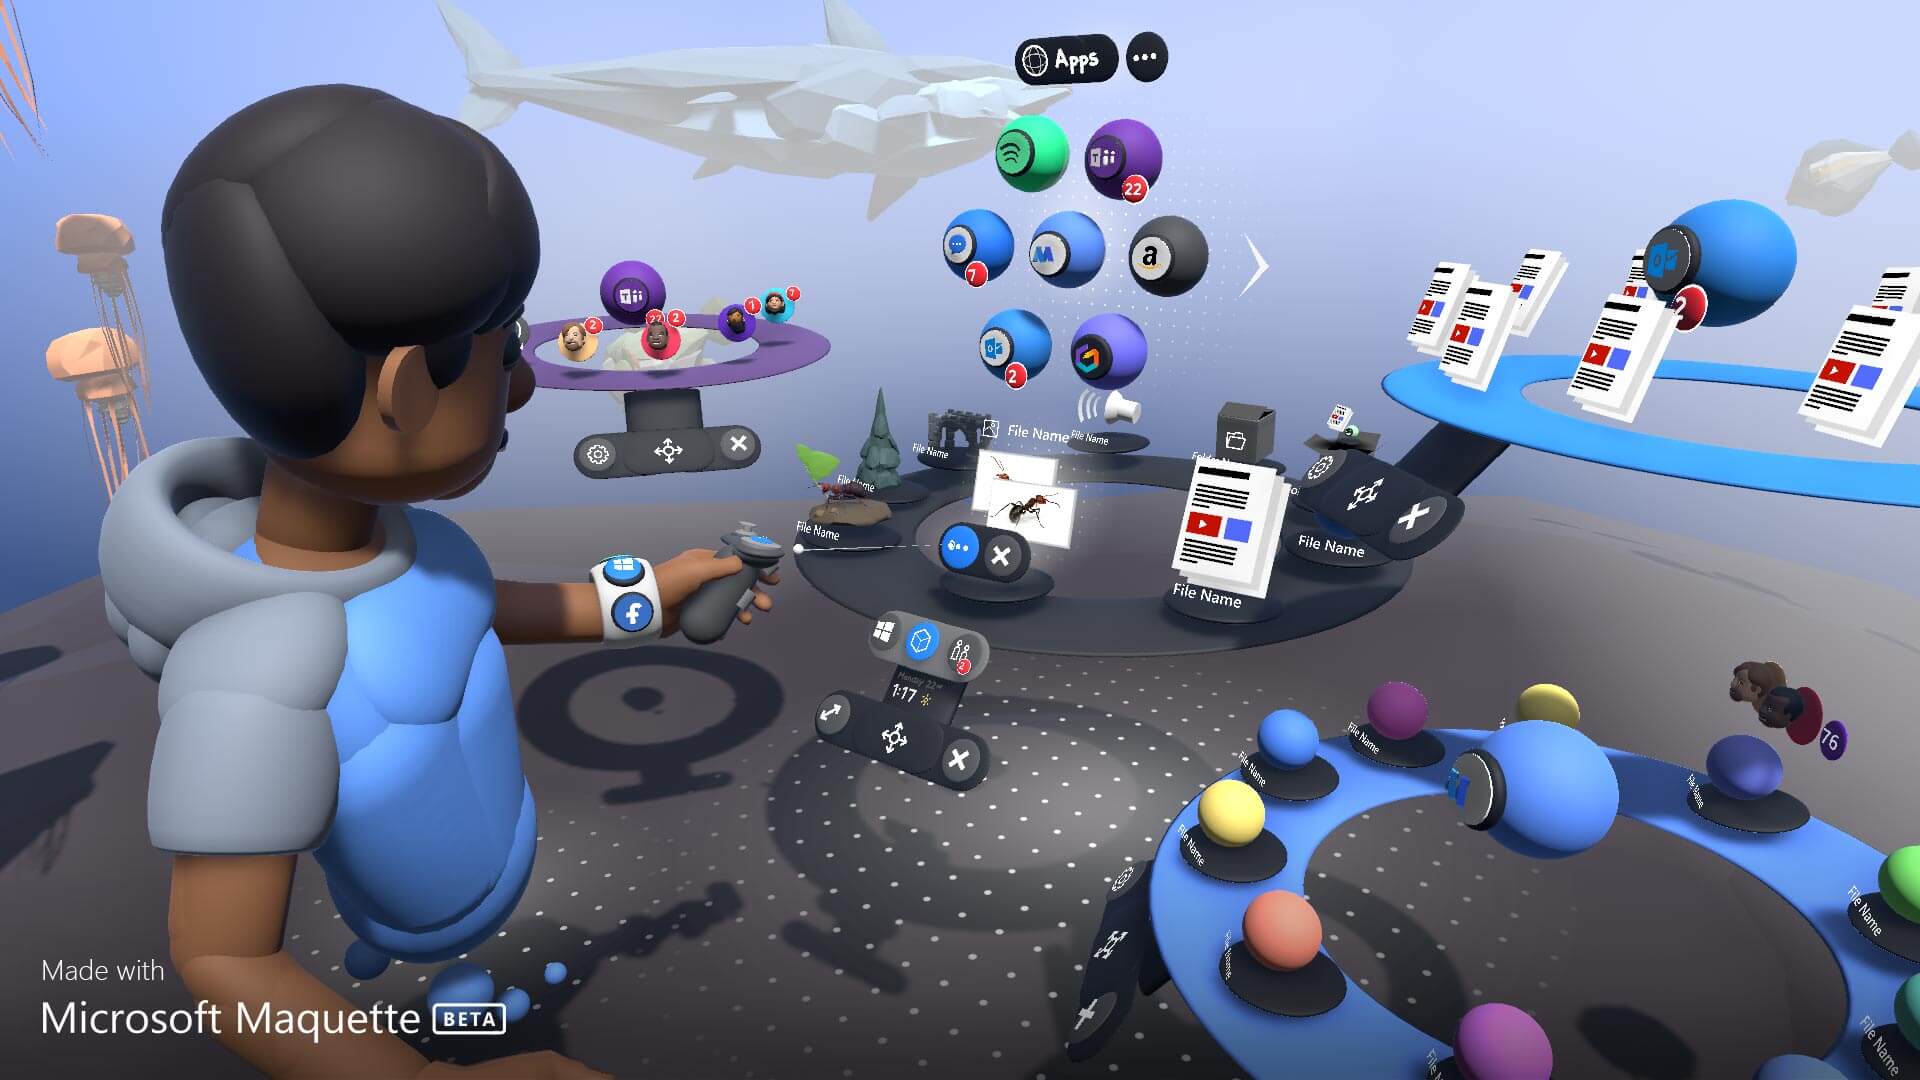 Microsoft Maquette Beta una nueva app para crear prototipos con Steam VR